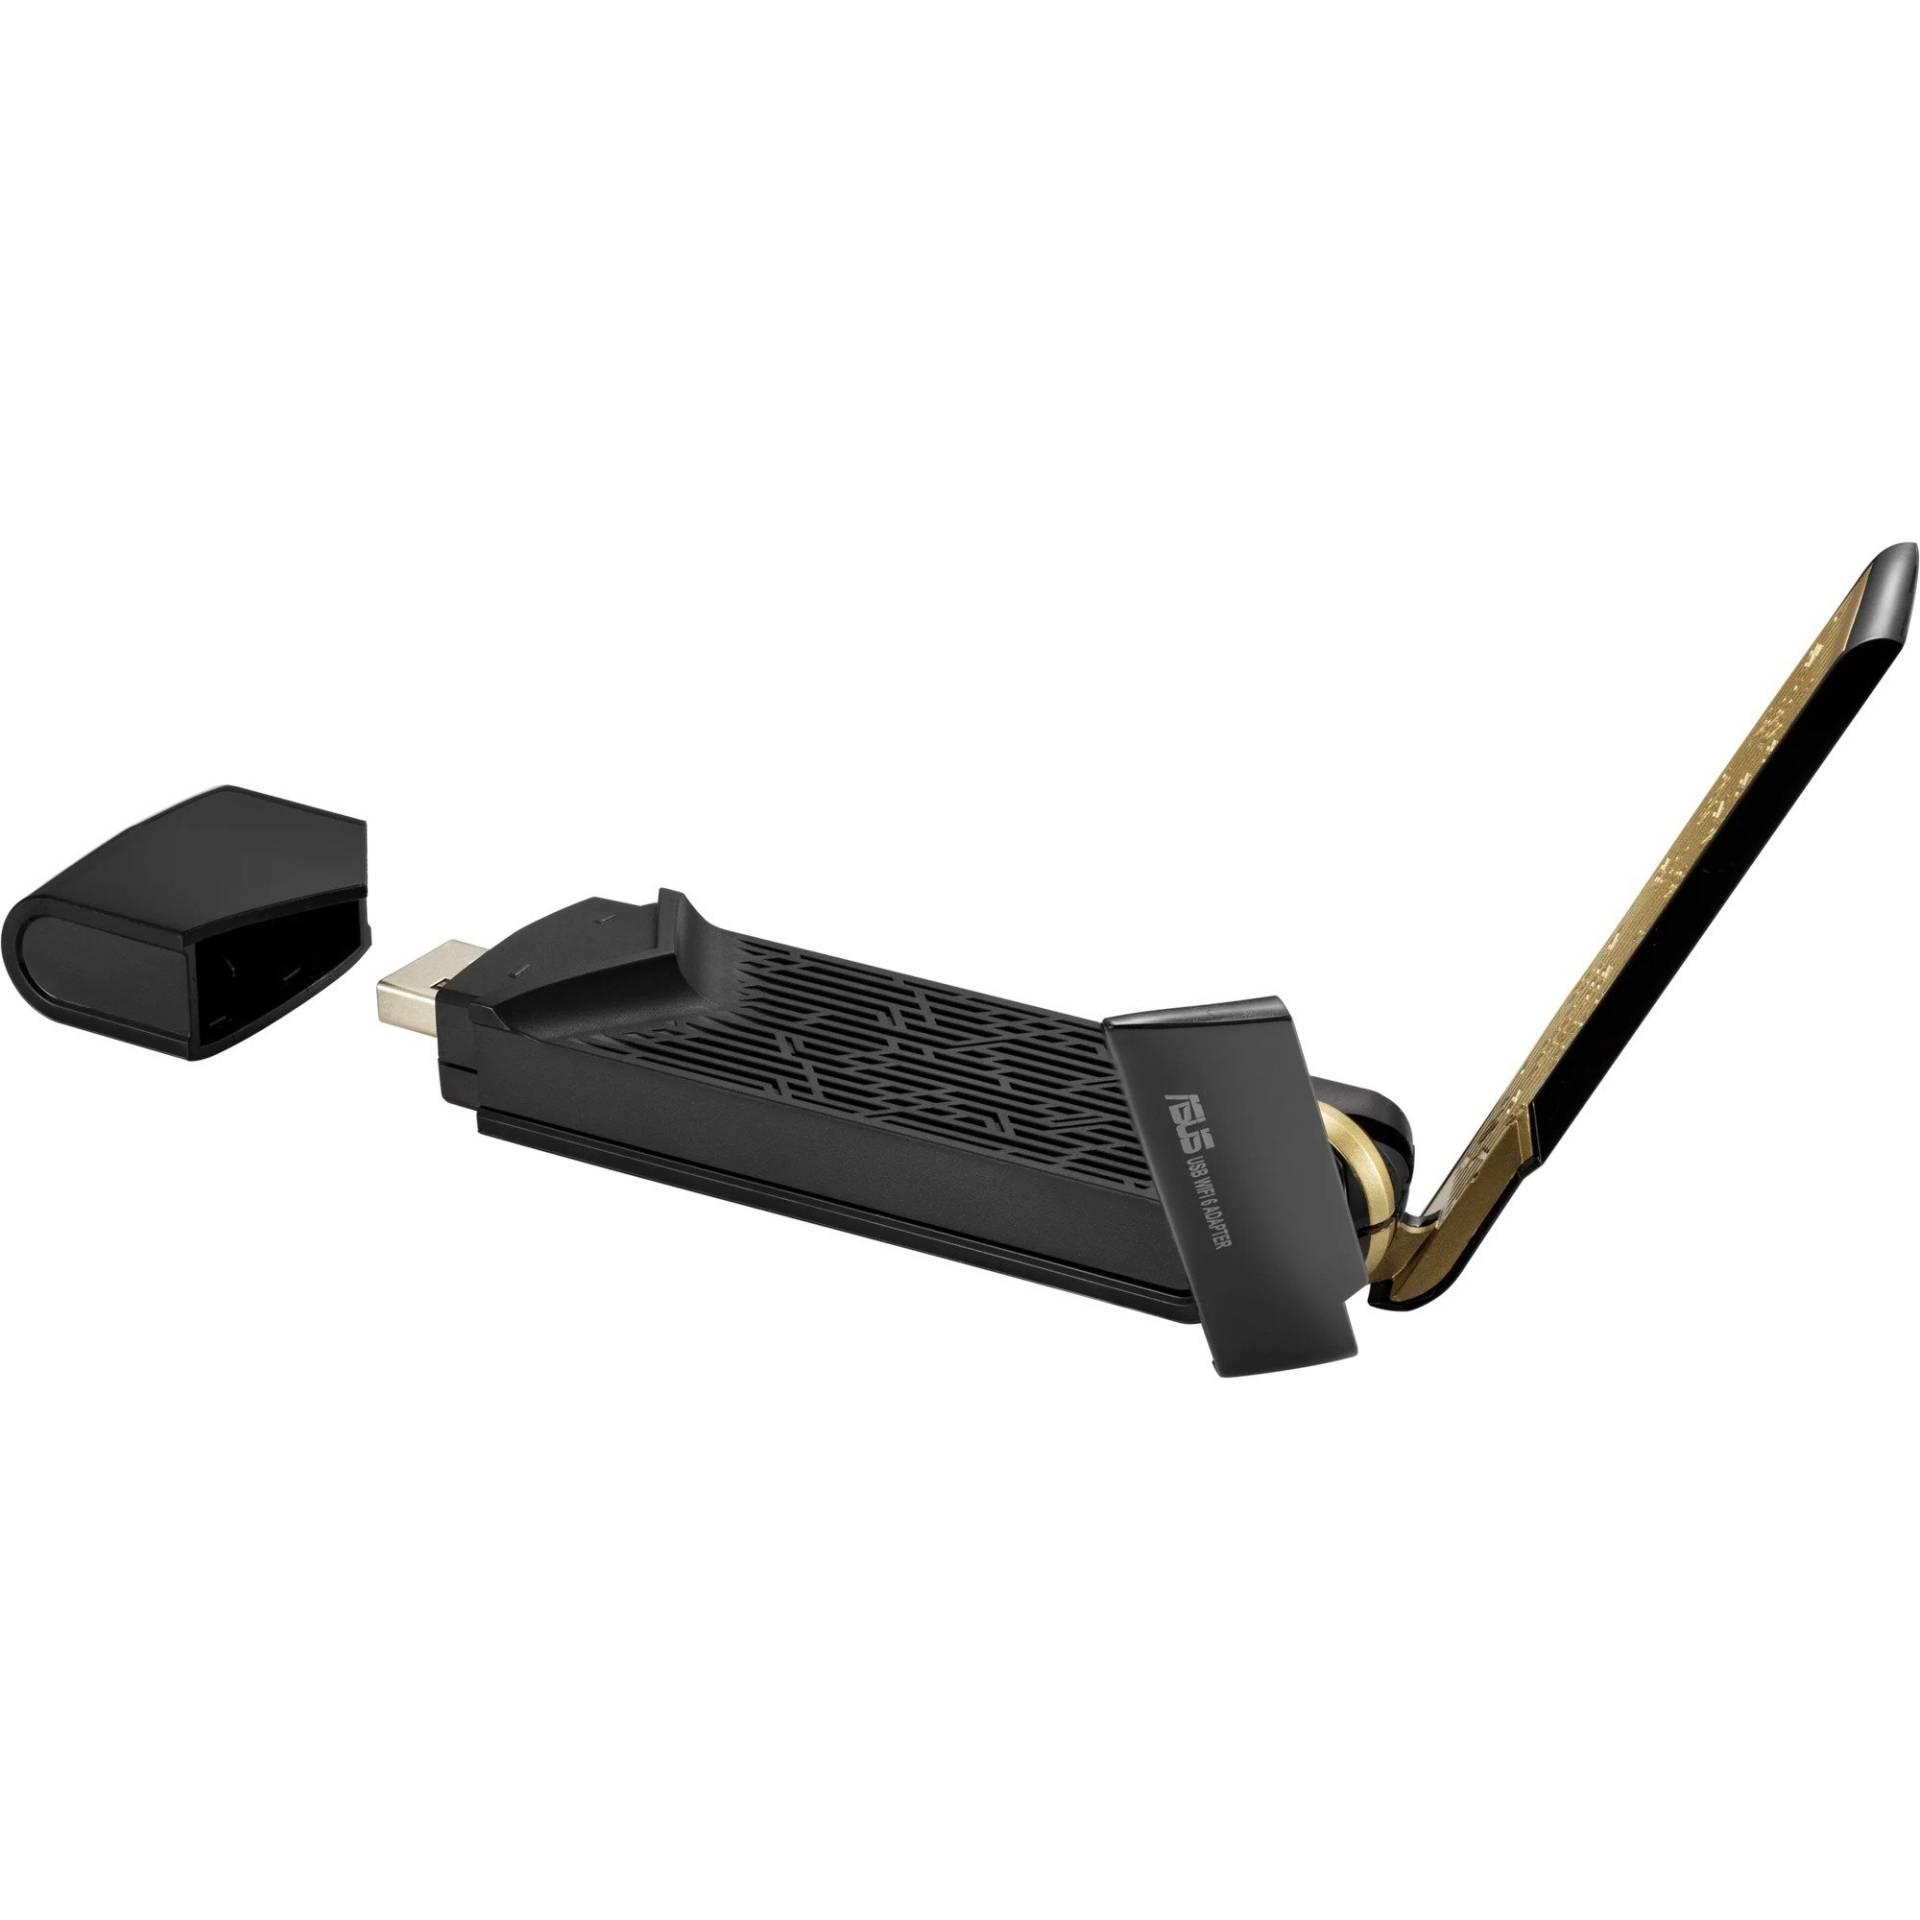 USB-AX56 AX1800 ohne Standfuß, WLAN-Adapter von Asus